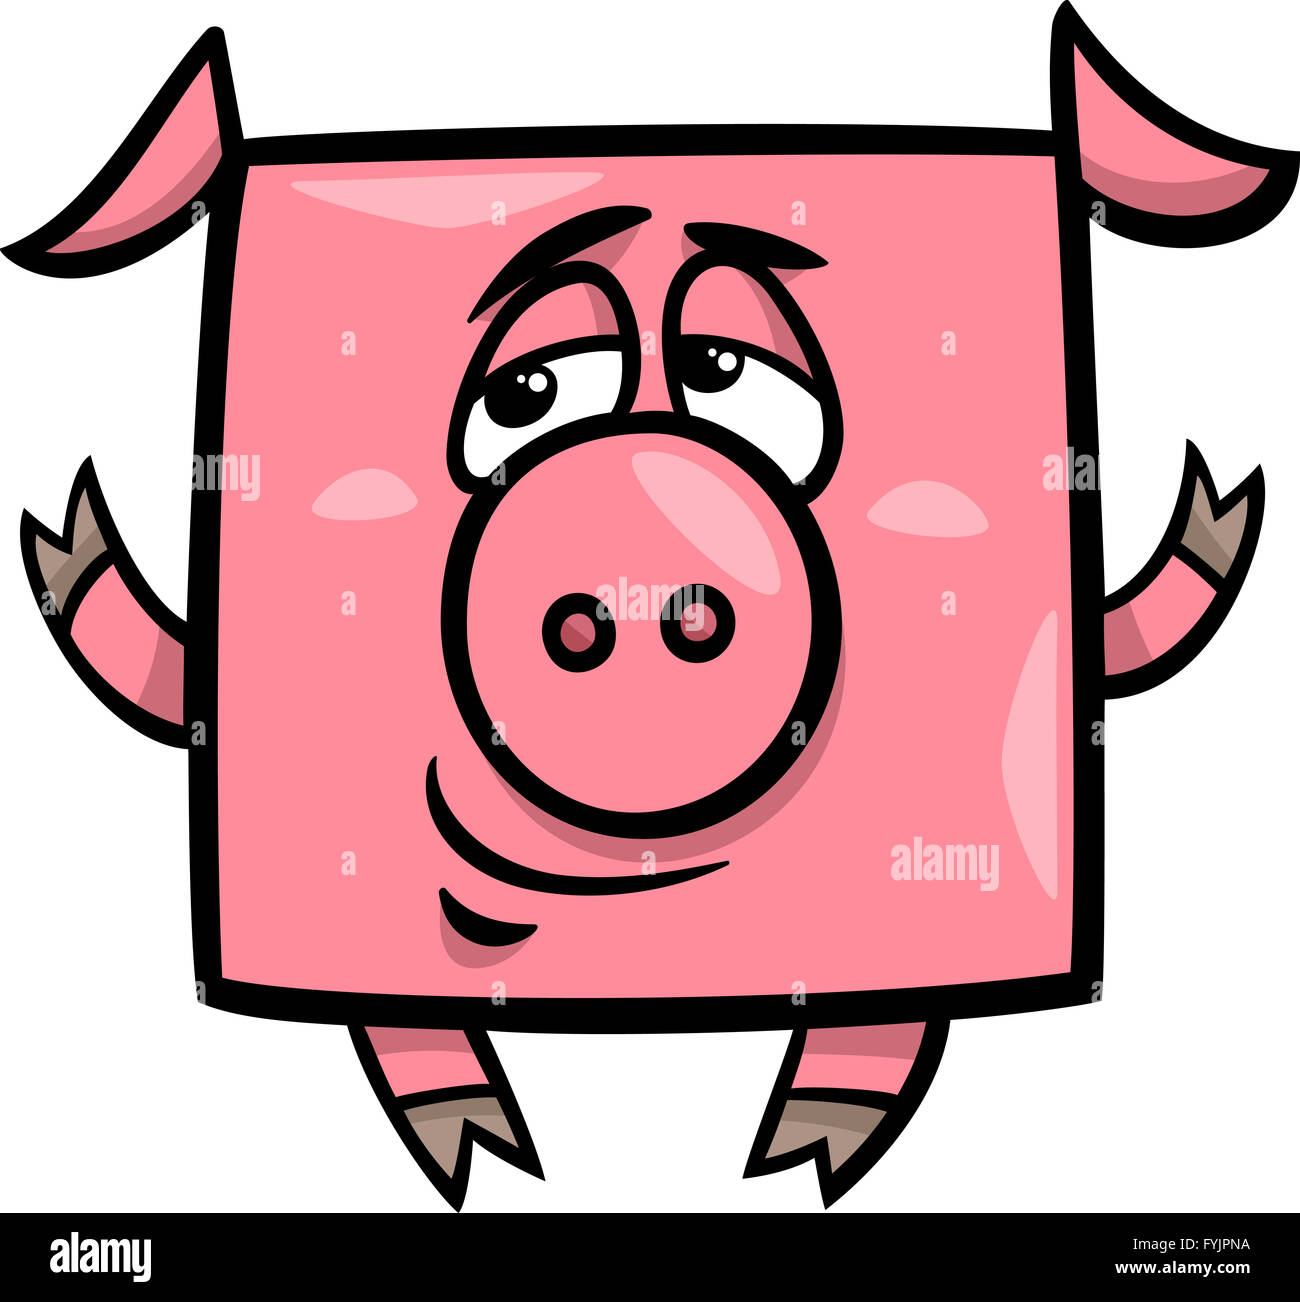 Ilustración de dibujos animados de cerdo cuadrado Fotografía de stock -  Alamy